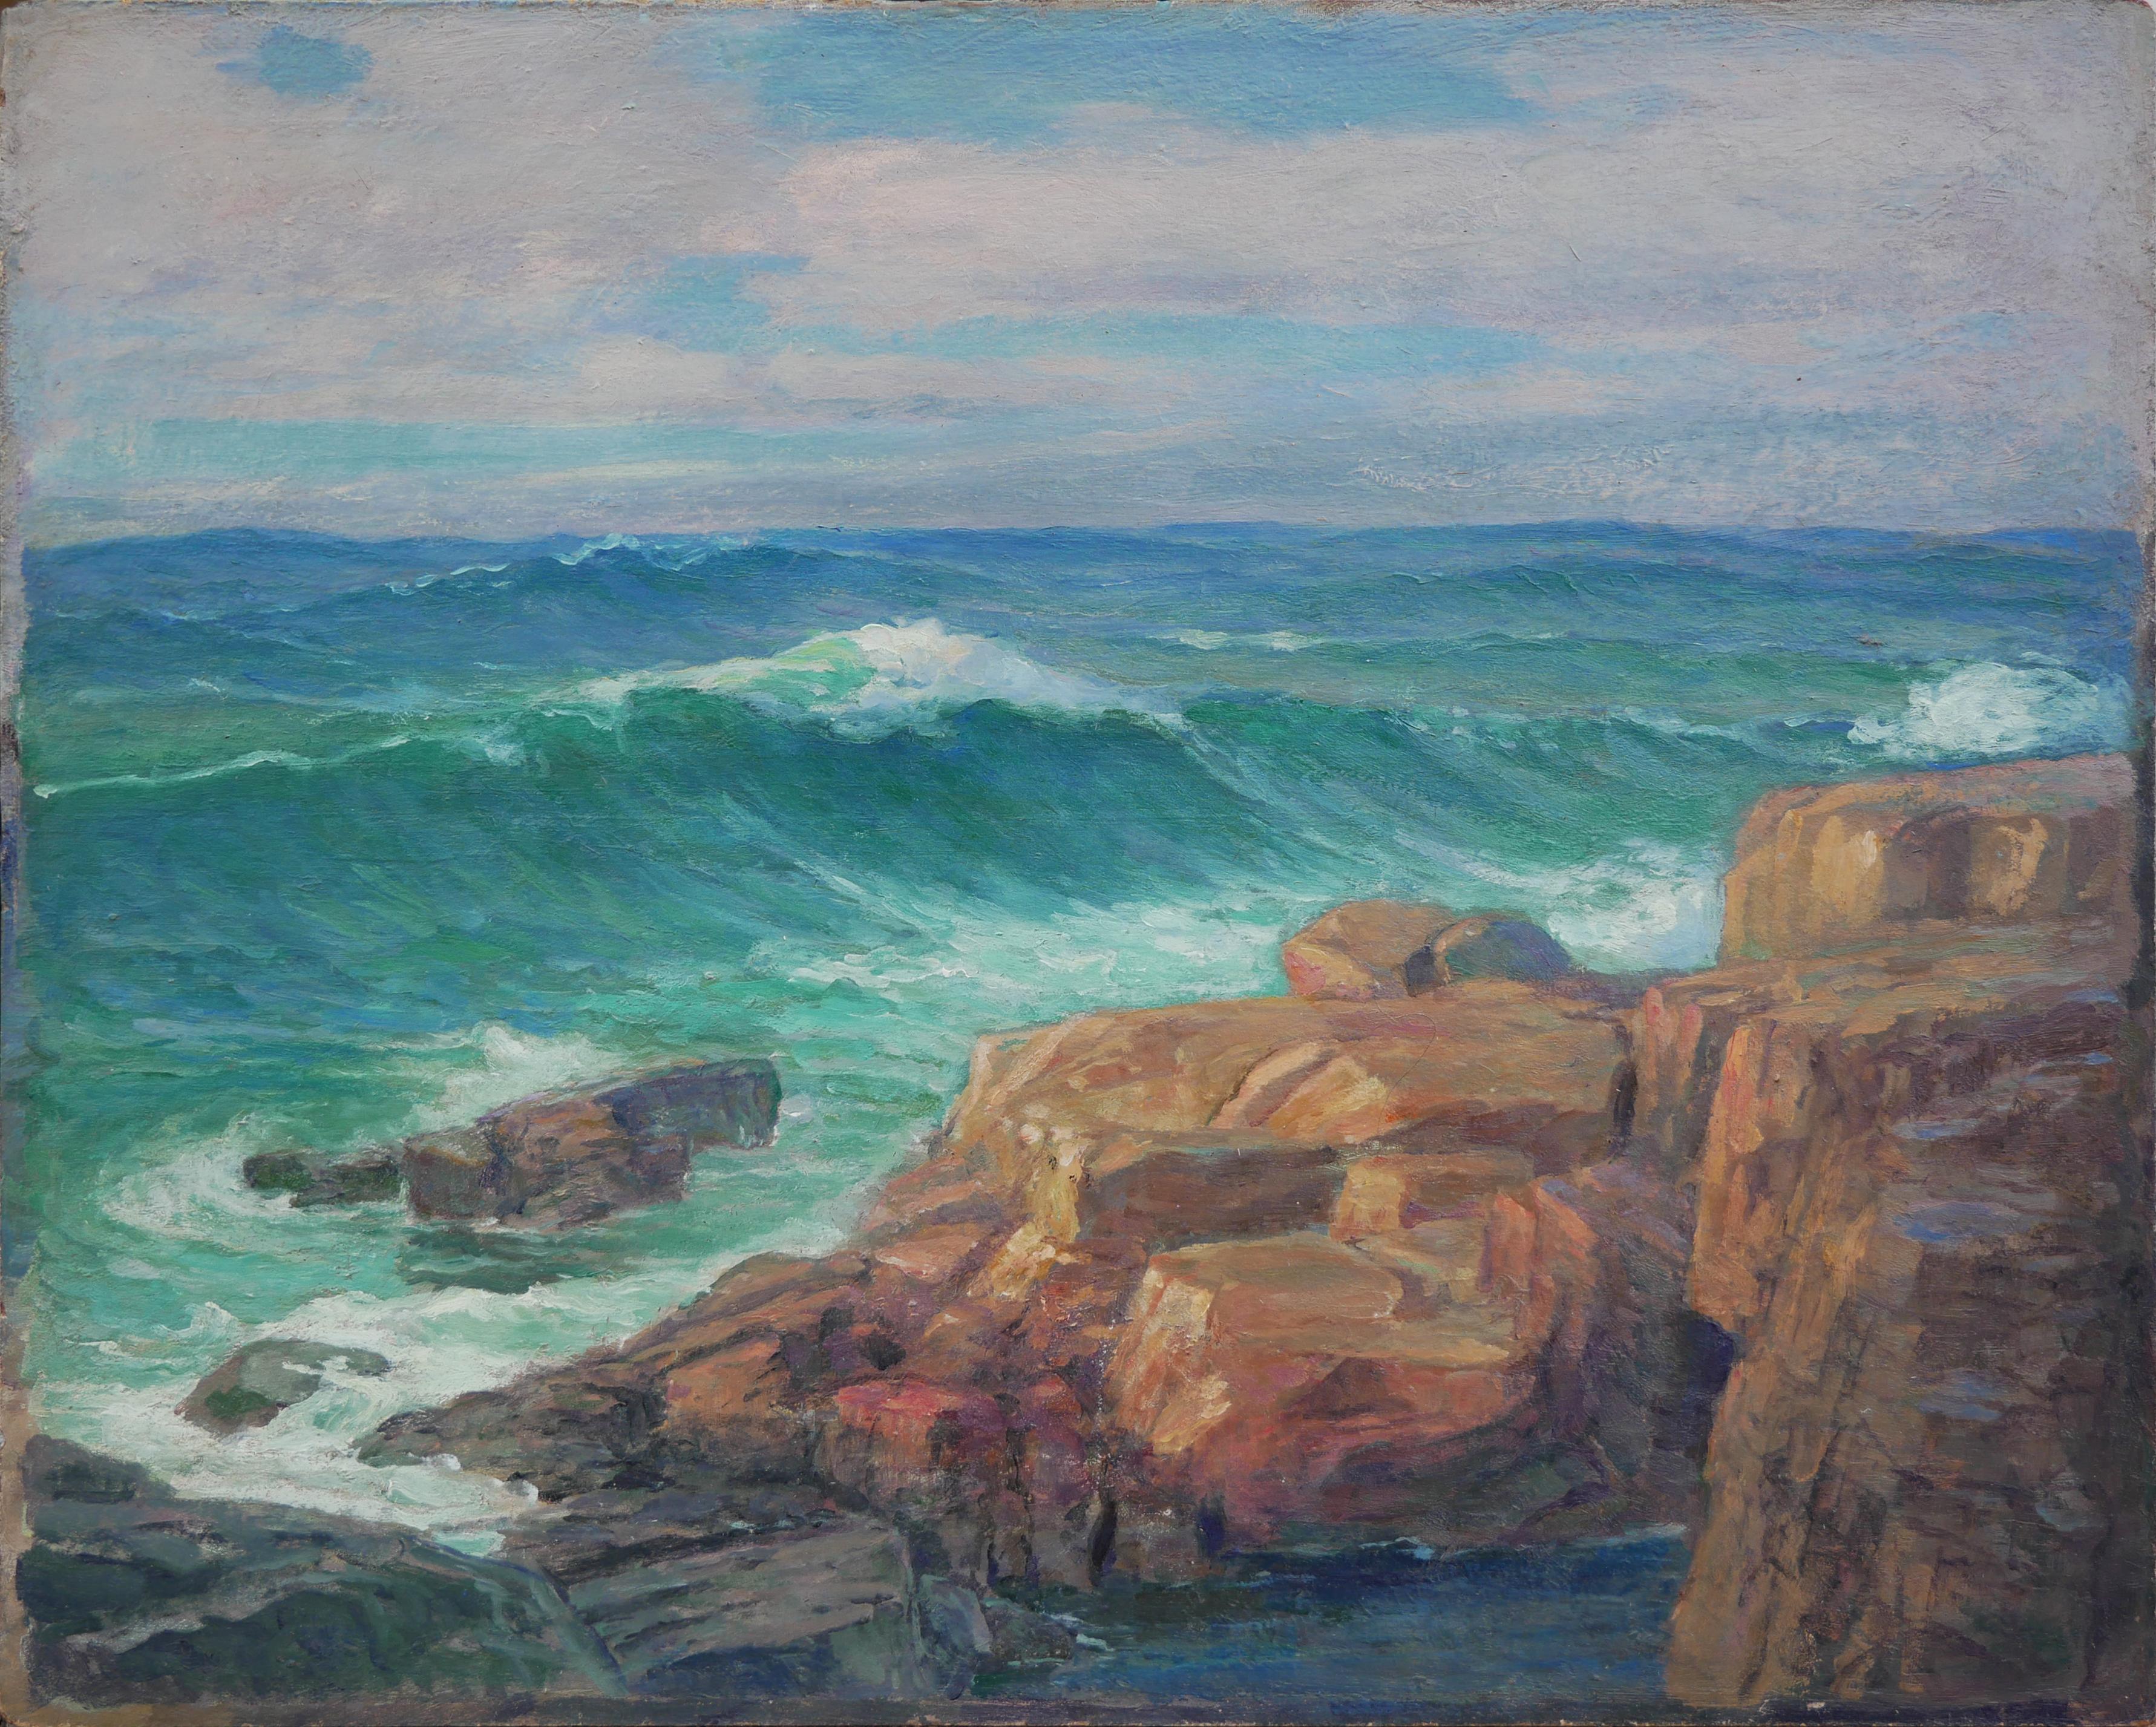 Unknown Landscape Painting – Teal und Blau getönte abstrakte impressionistische Meereslandschaft